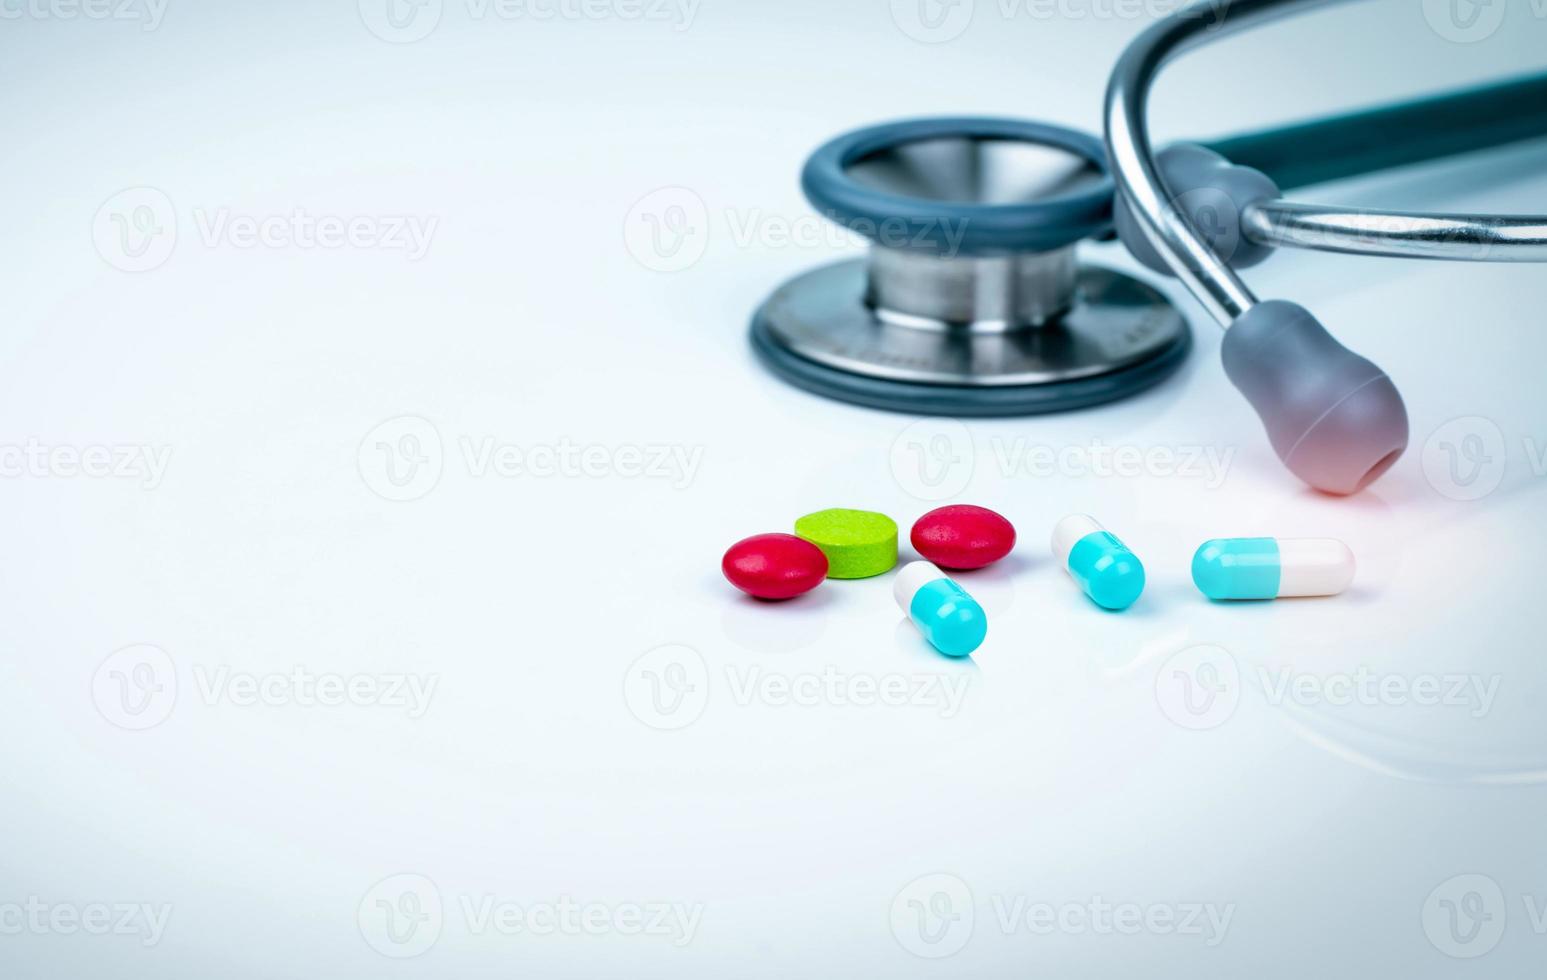 stetoskop, kapsel och tabletter piller på läkare bord eller sjuksköterska skrivbord. hälsokontroll. medicinsk sjukvård och medicinbakgrund. läkarverktyg för patientdiagnostik. kardiolog läkare utrustning. foto